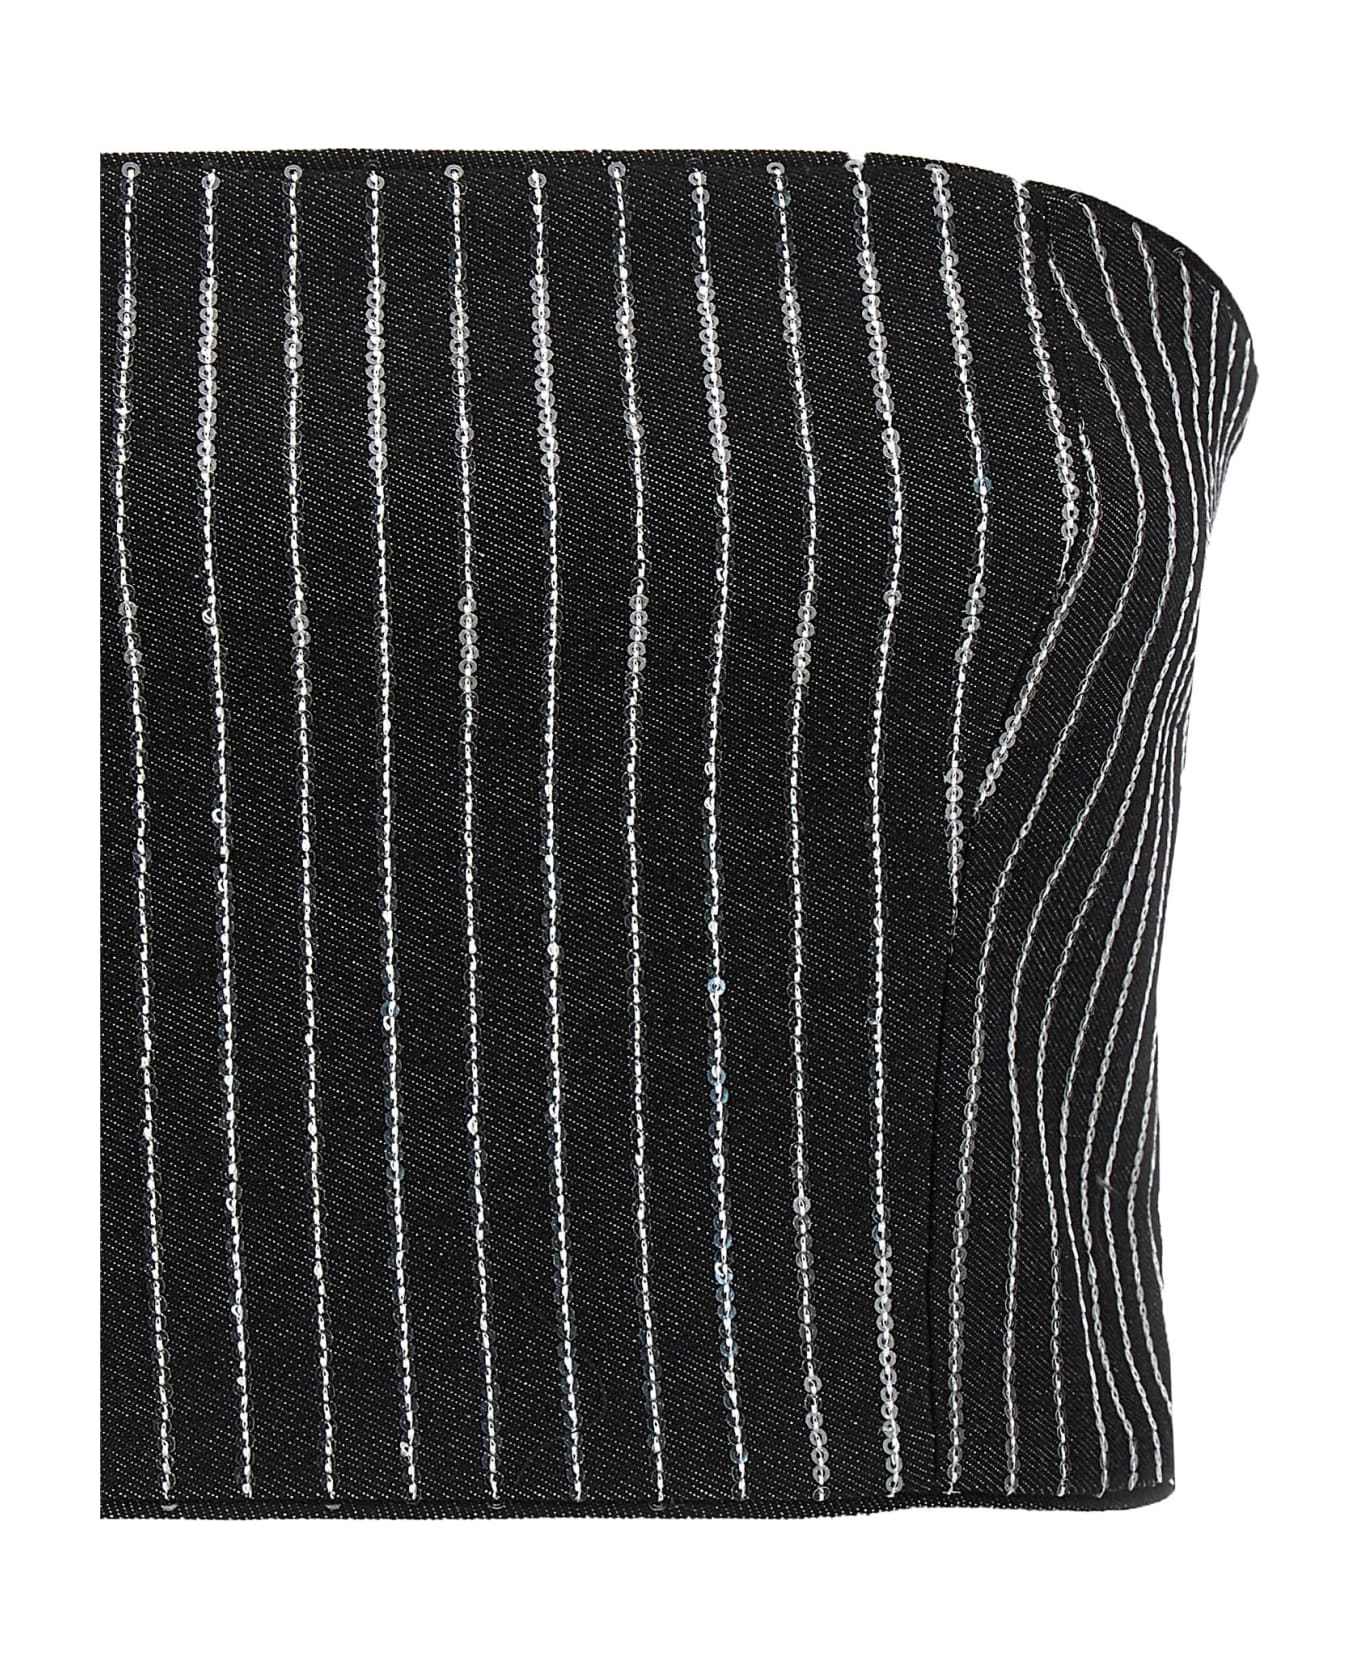 Rotate by Birger Christensen Sequin Pinstripe Crop Top - Black  